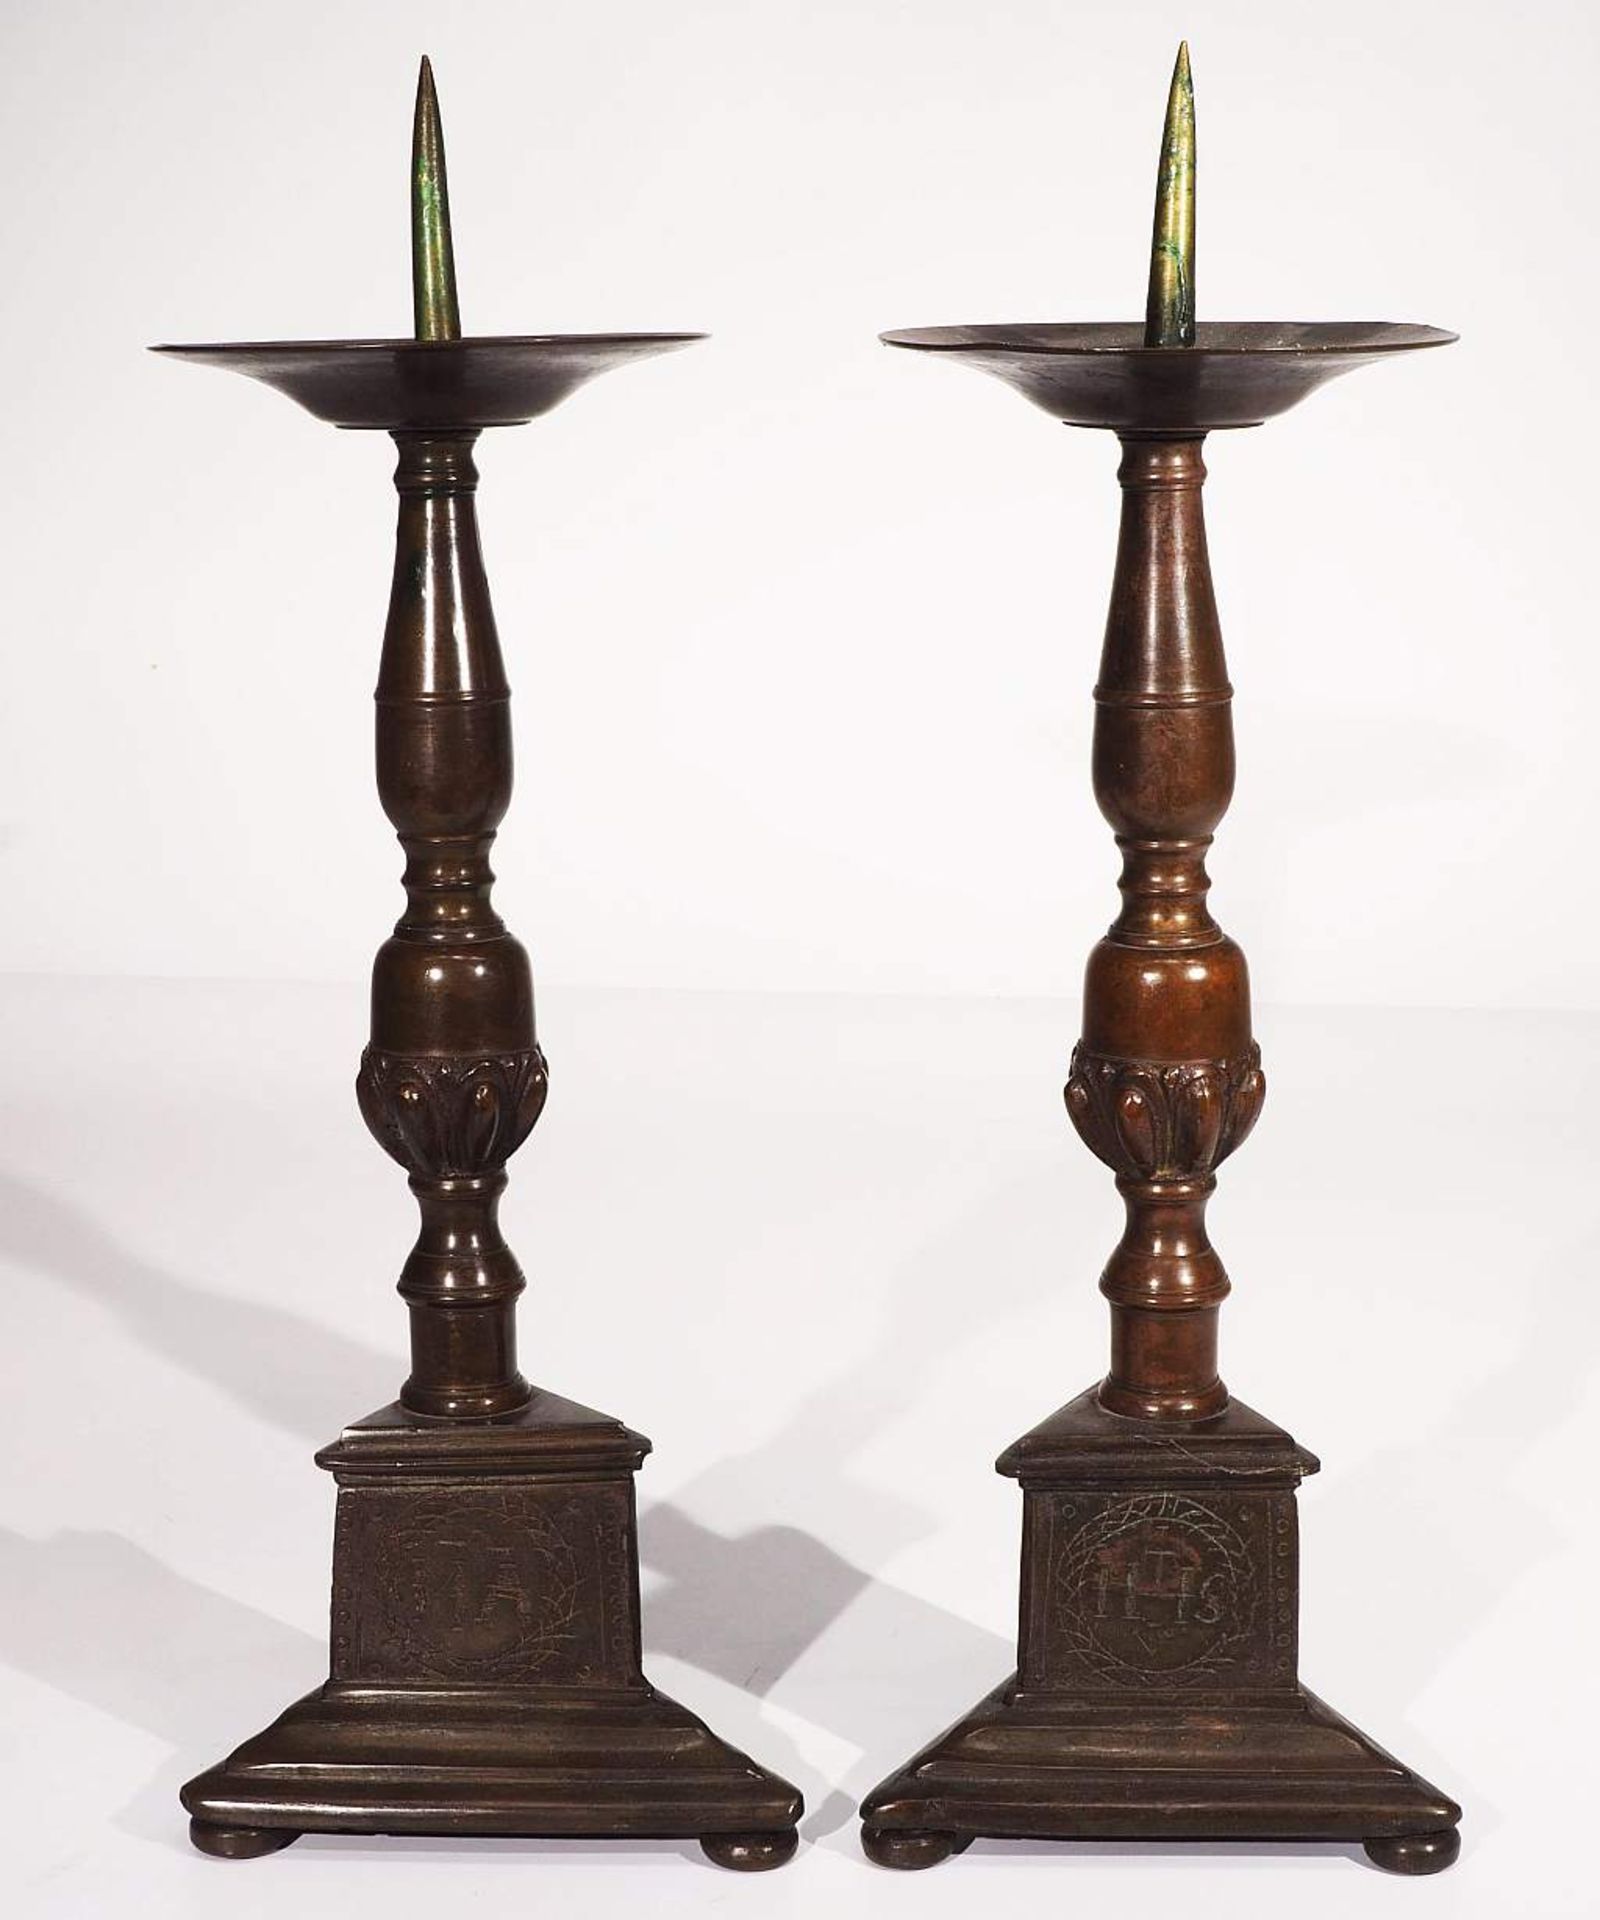 Paar Kerzenleuchter mit langem Dorn, 19. Jahrhundert. Bronze, dreipassiger Stand allseits mit - Bild 2 aus 5